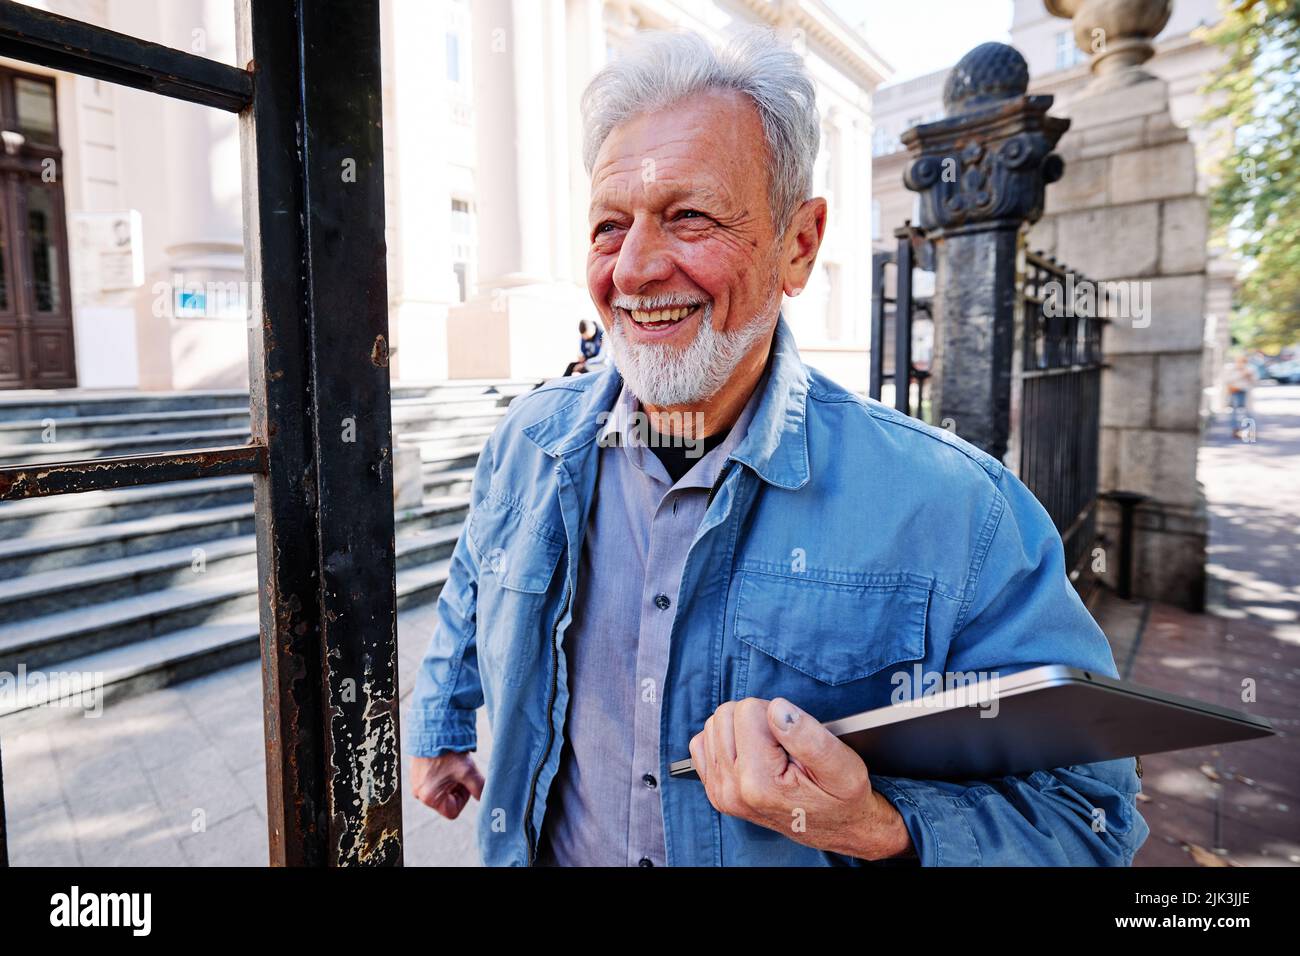 Ein glücklicher Seniorschüler verlässt die Schule. Er hält einen Laptop in der Hand. Umschulung für Senioren Konzept. Stockfoto